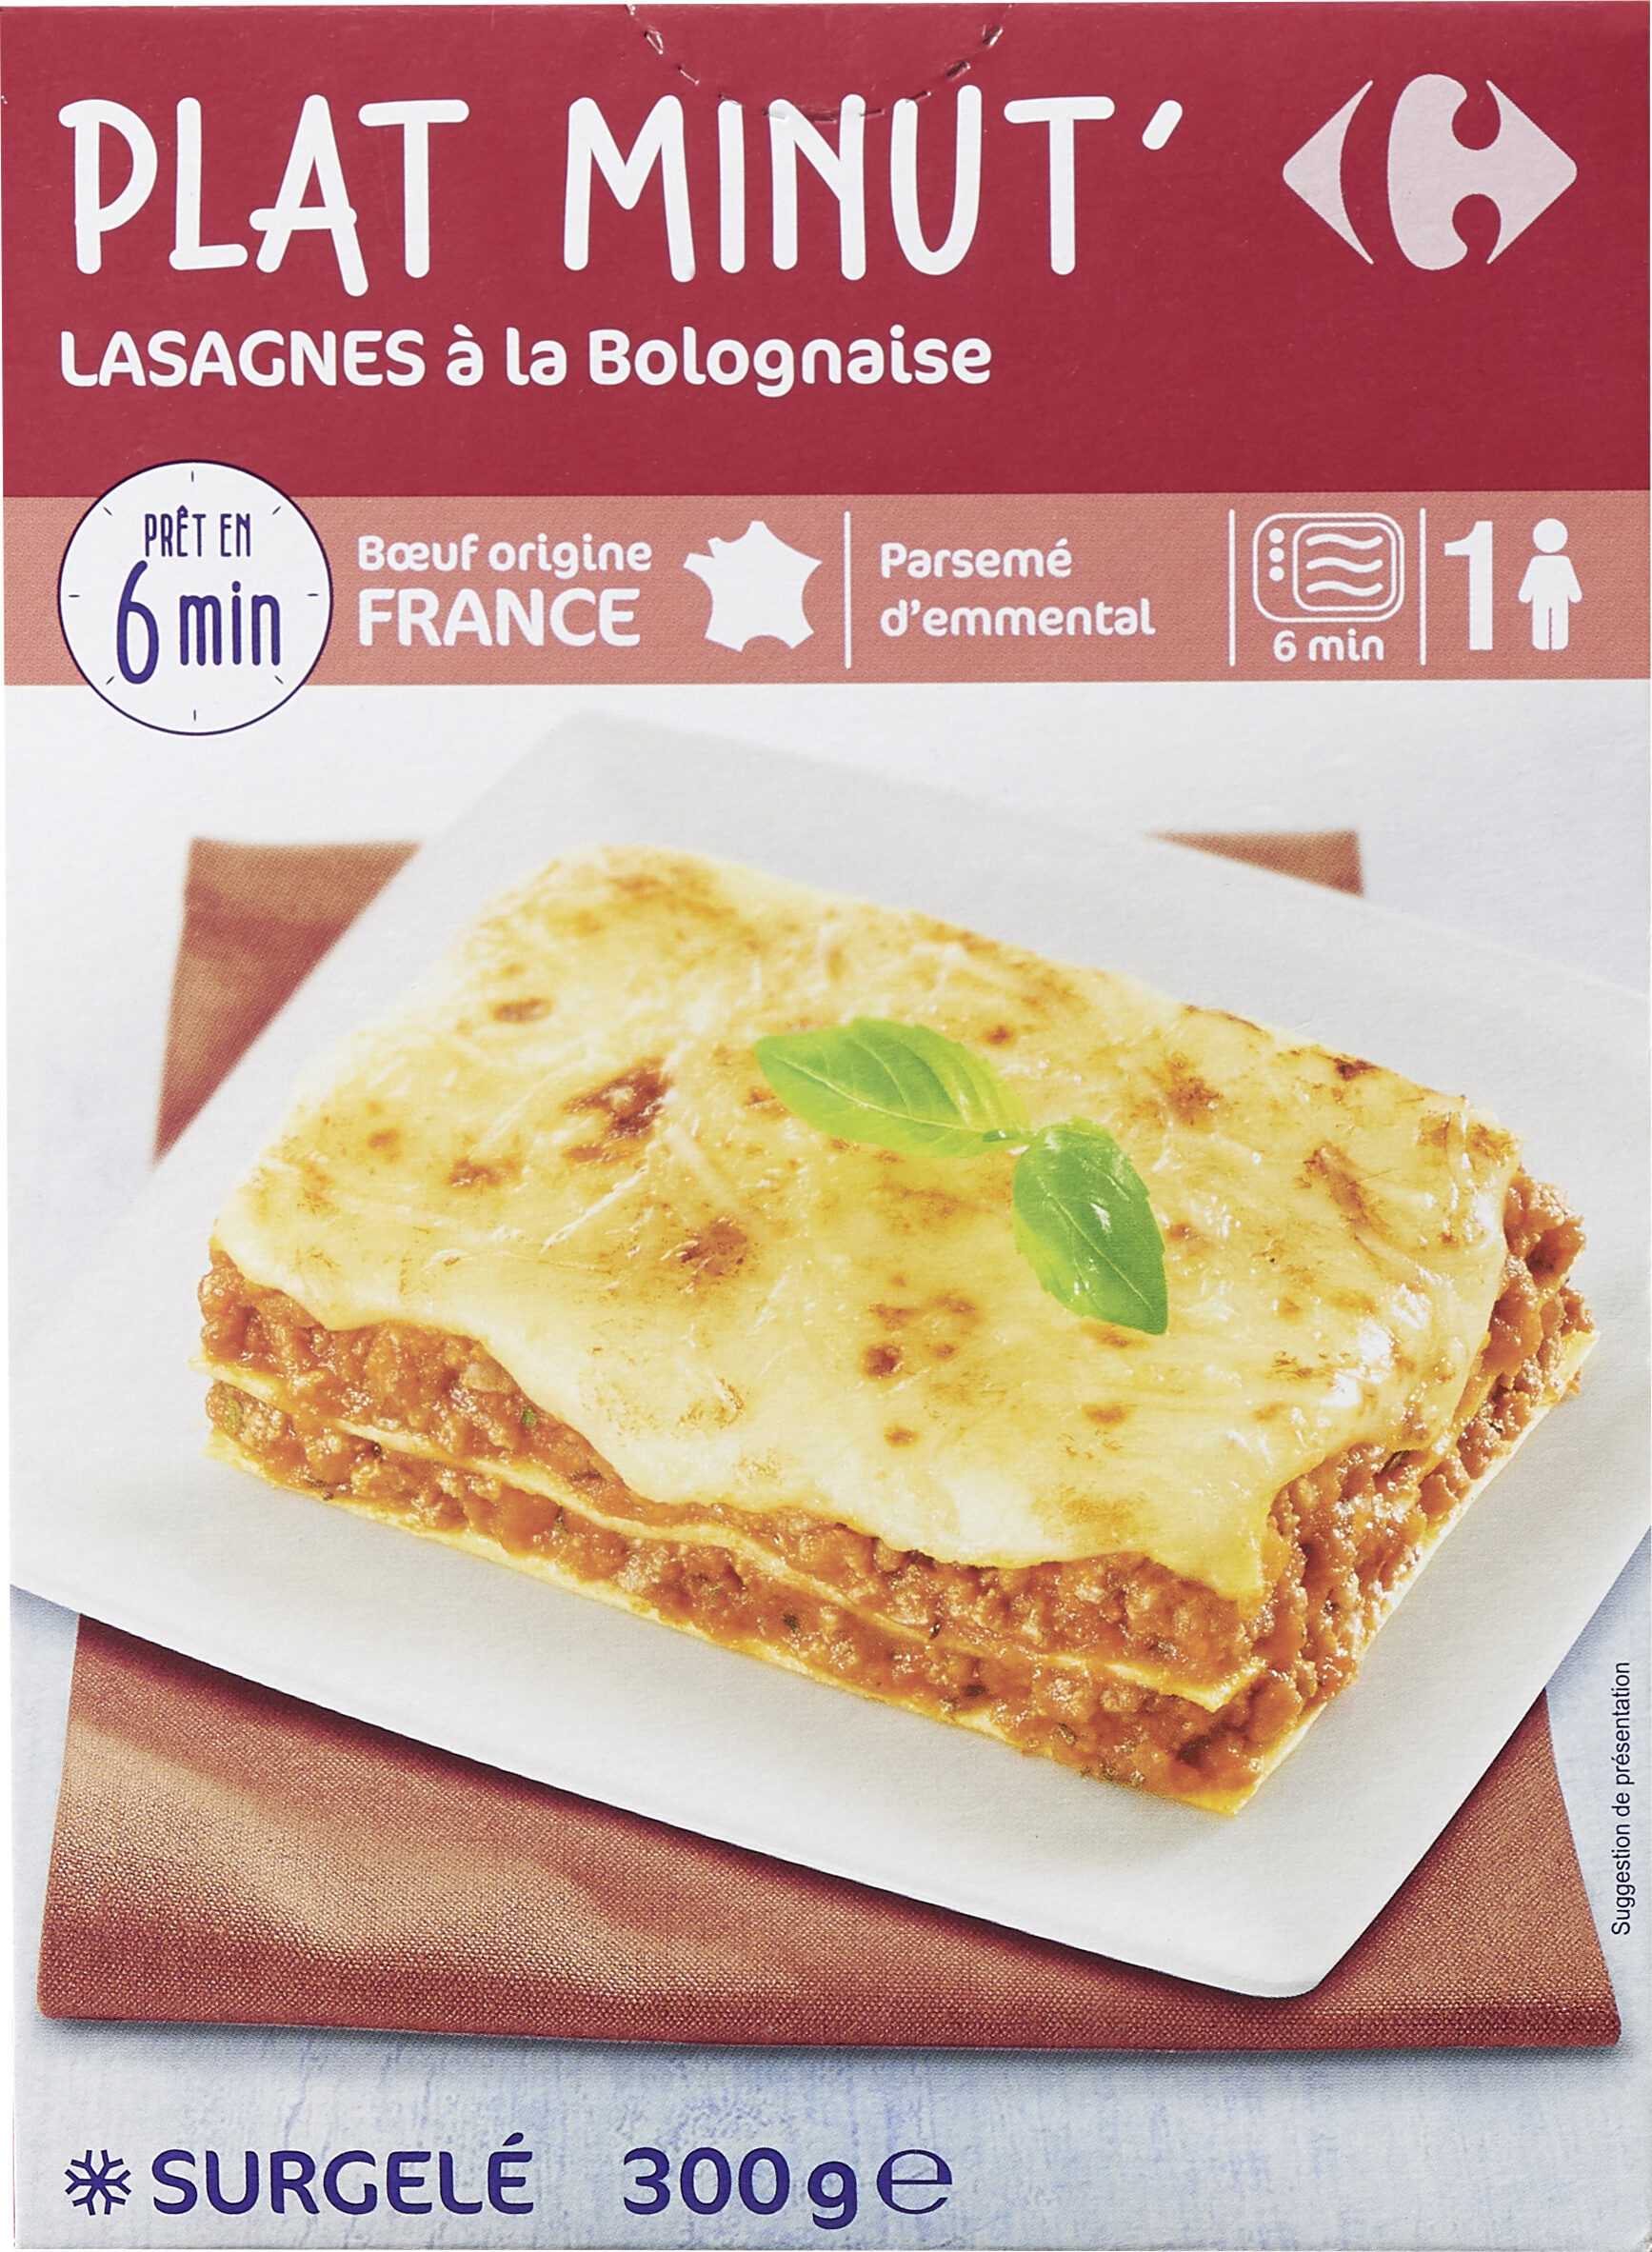 Plat minut' lasagnes à la bolognaise - Product - fr